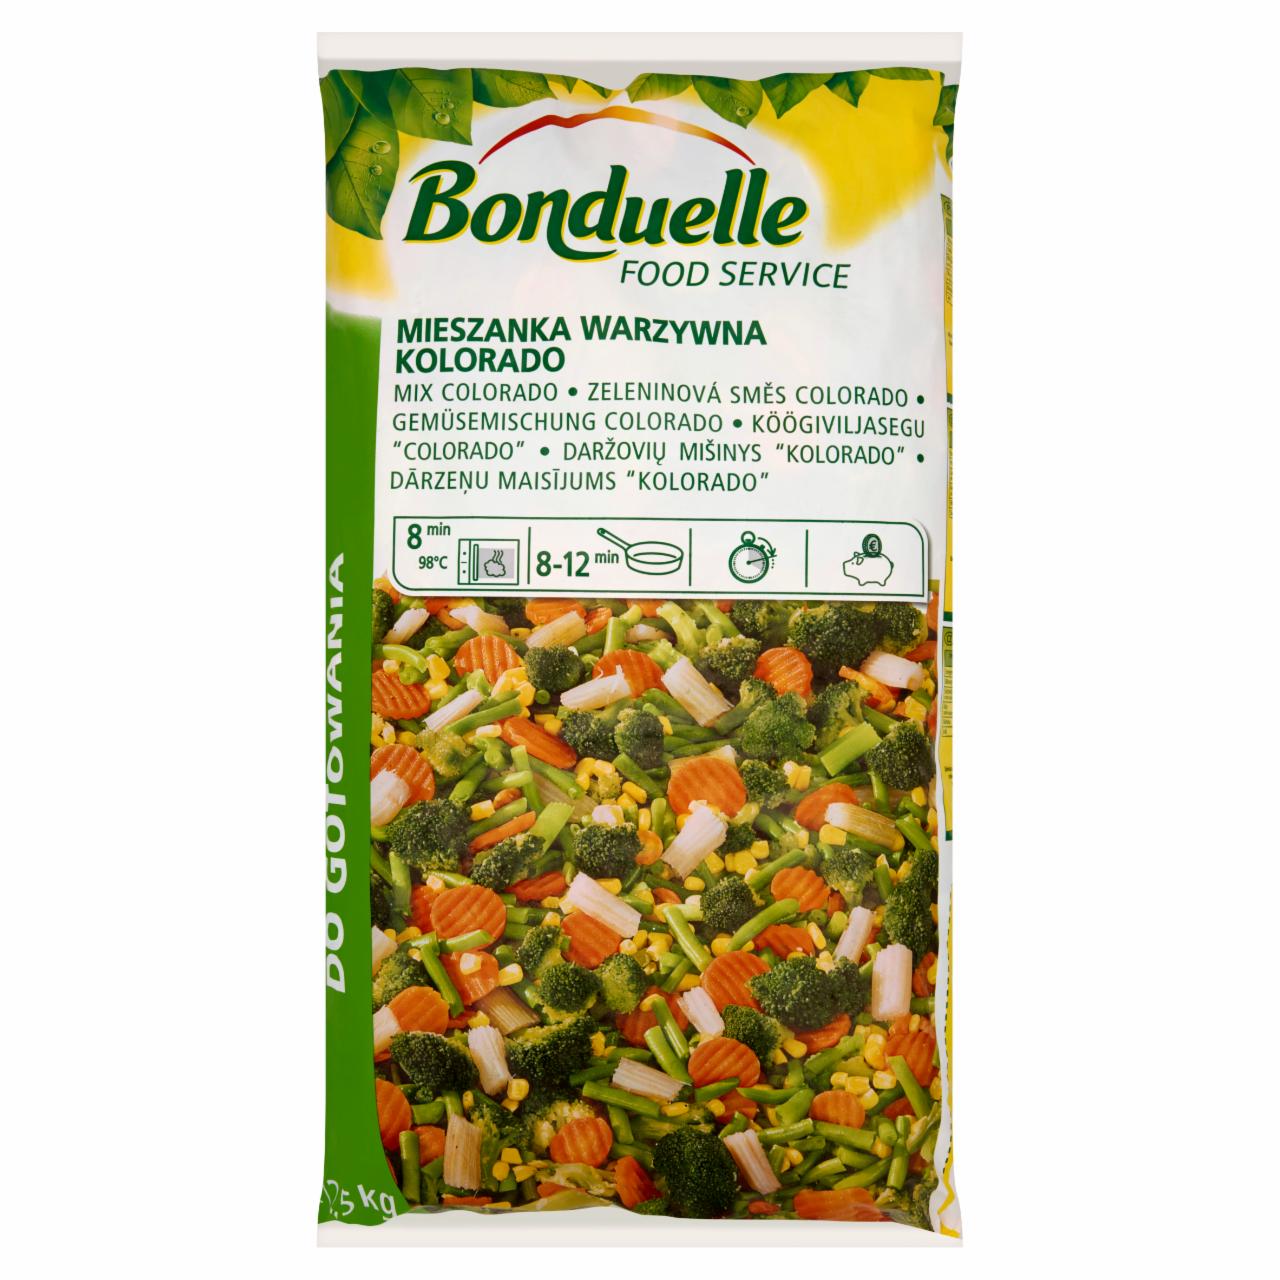 Képek - Bonduelle Food Service Kolorado gyorsfagyasztott zöldségkeverék 2,5 kg